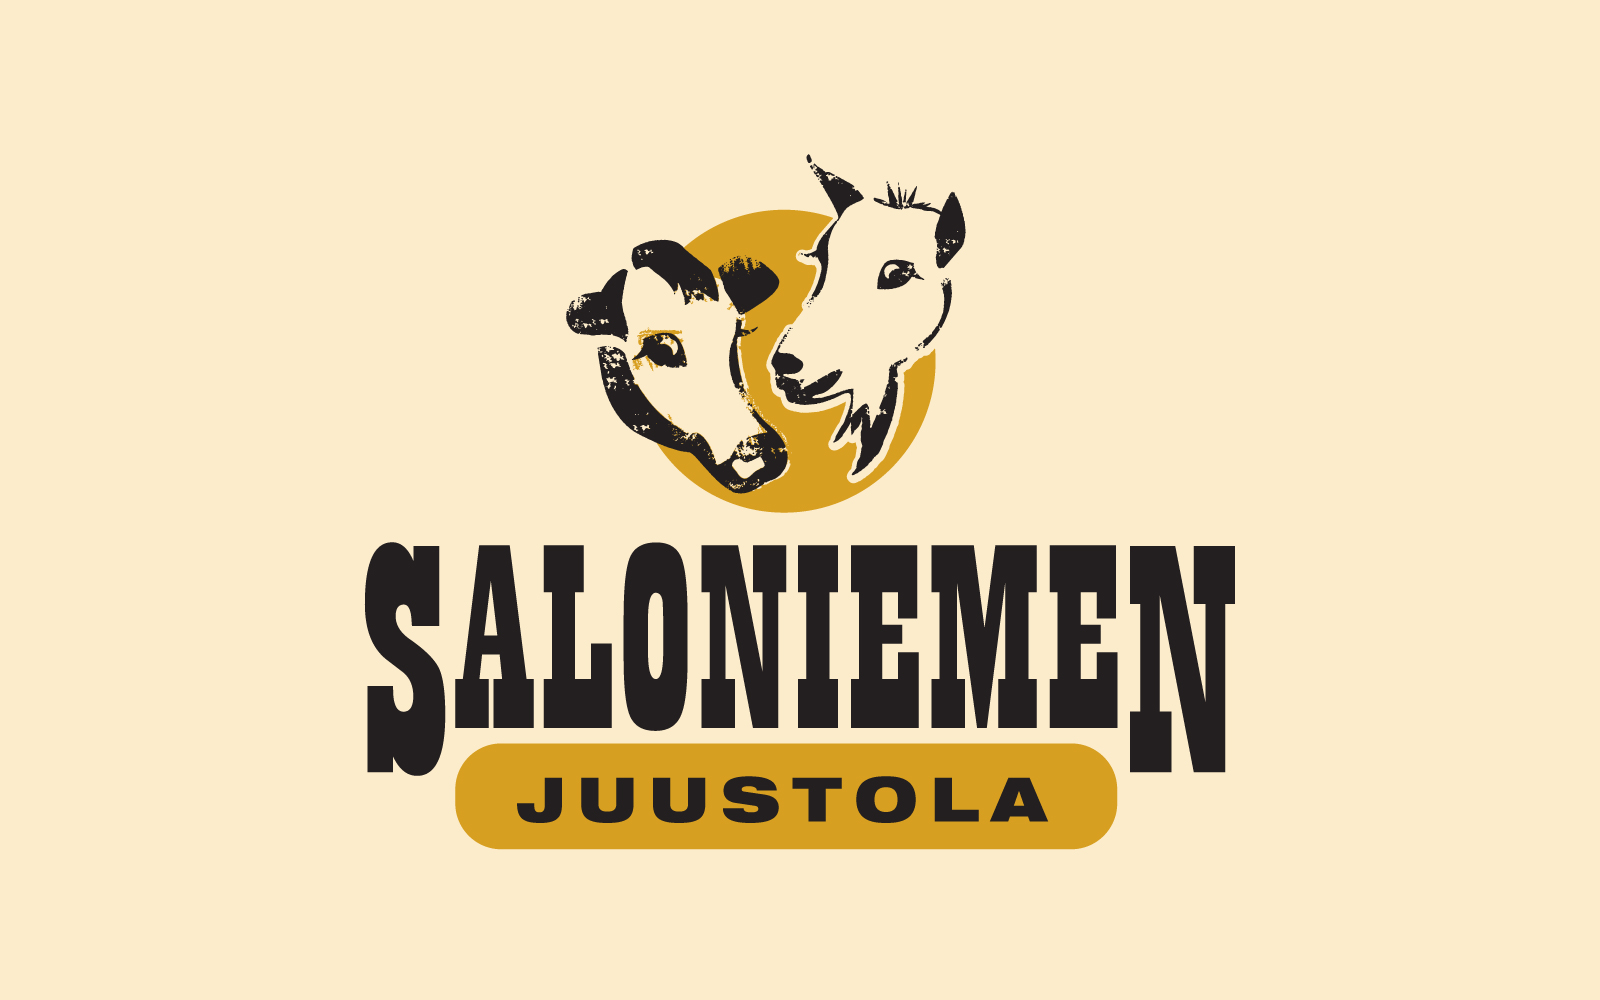 Saloniemen Juustola logo